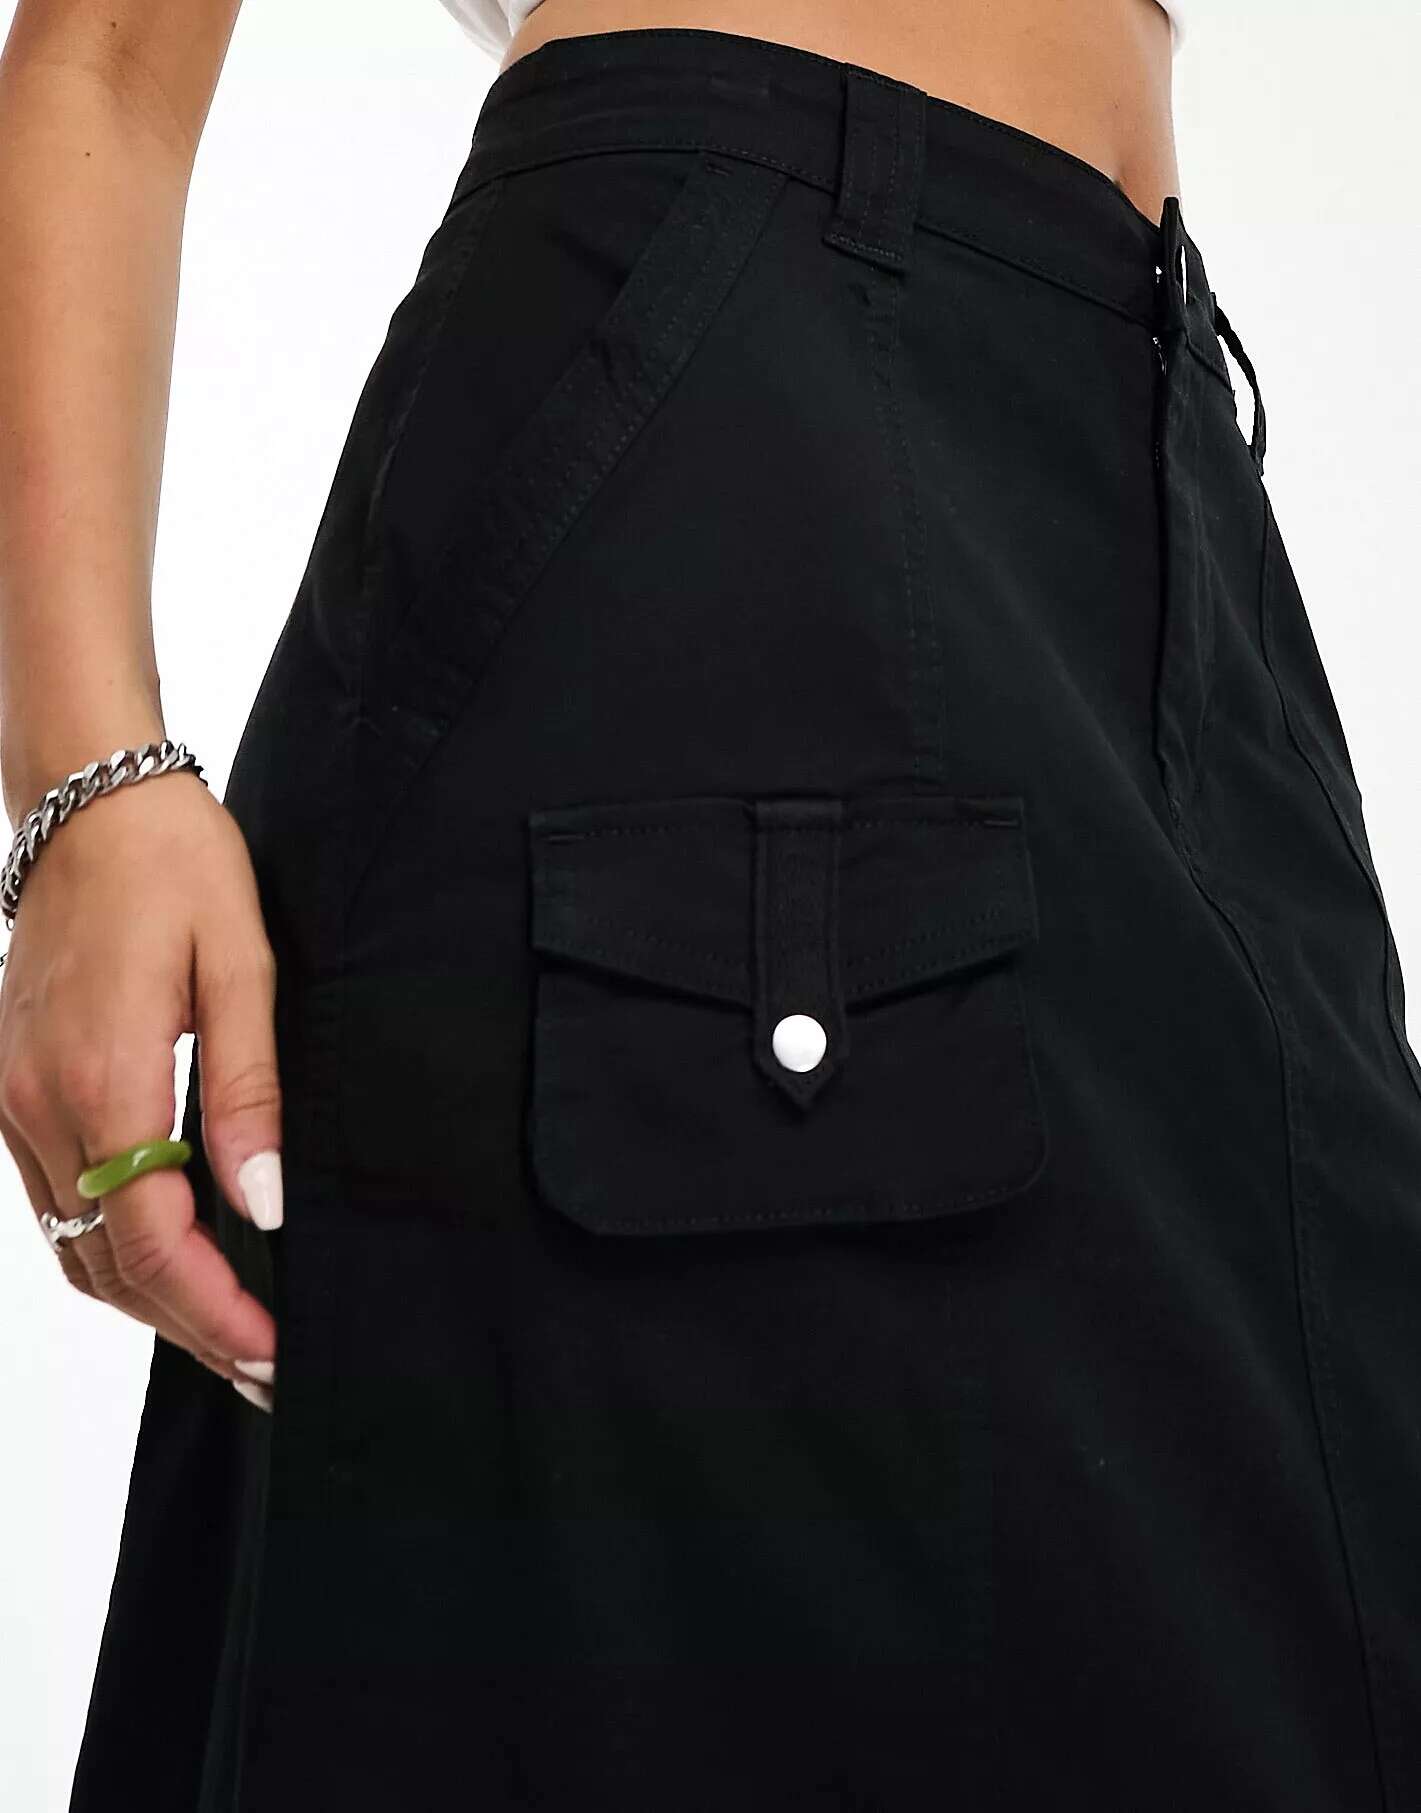 Хлопок: Юбка макси On практичная черная Cotton:On юбка панинтер практичная 44 размер